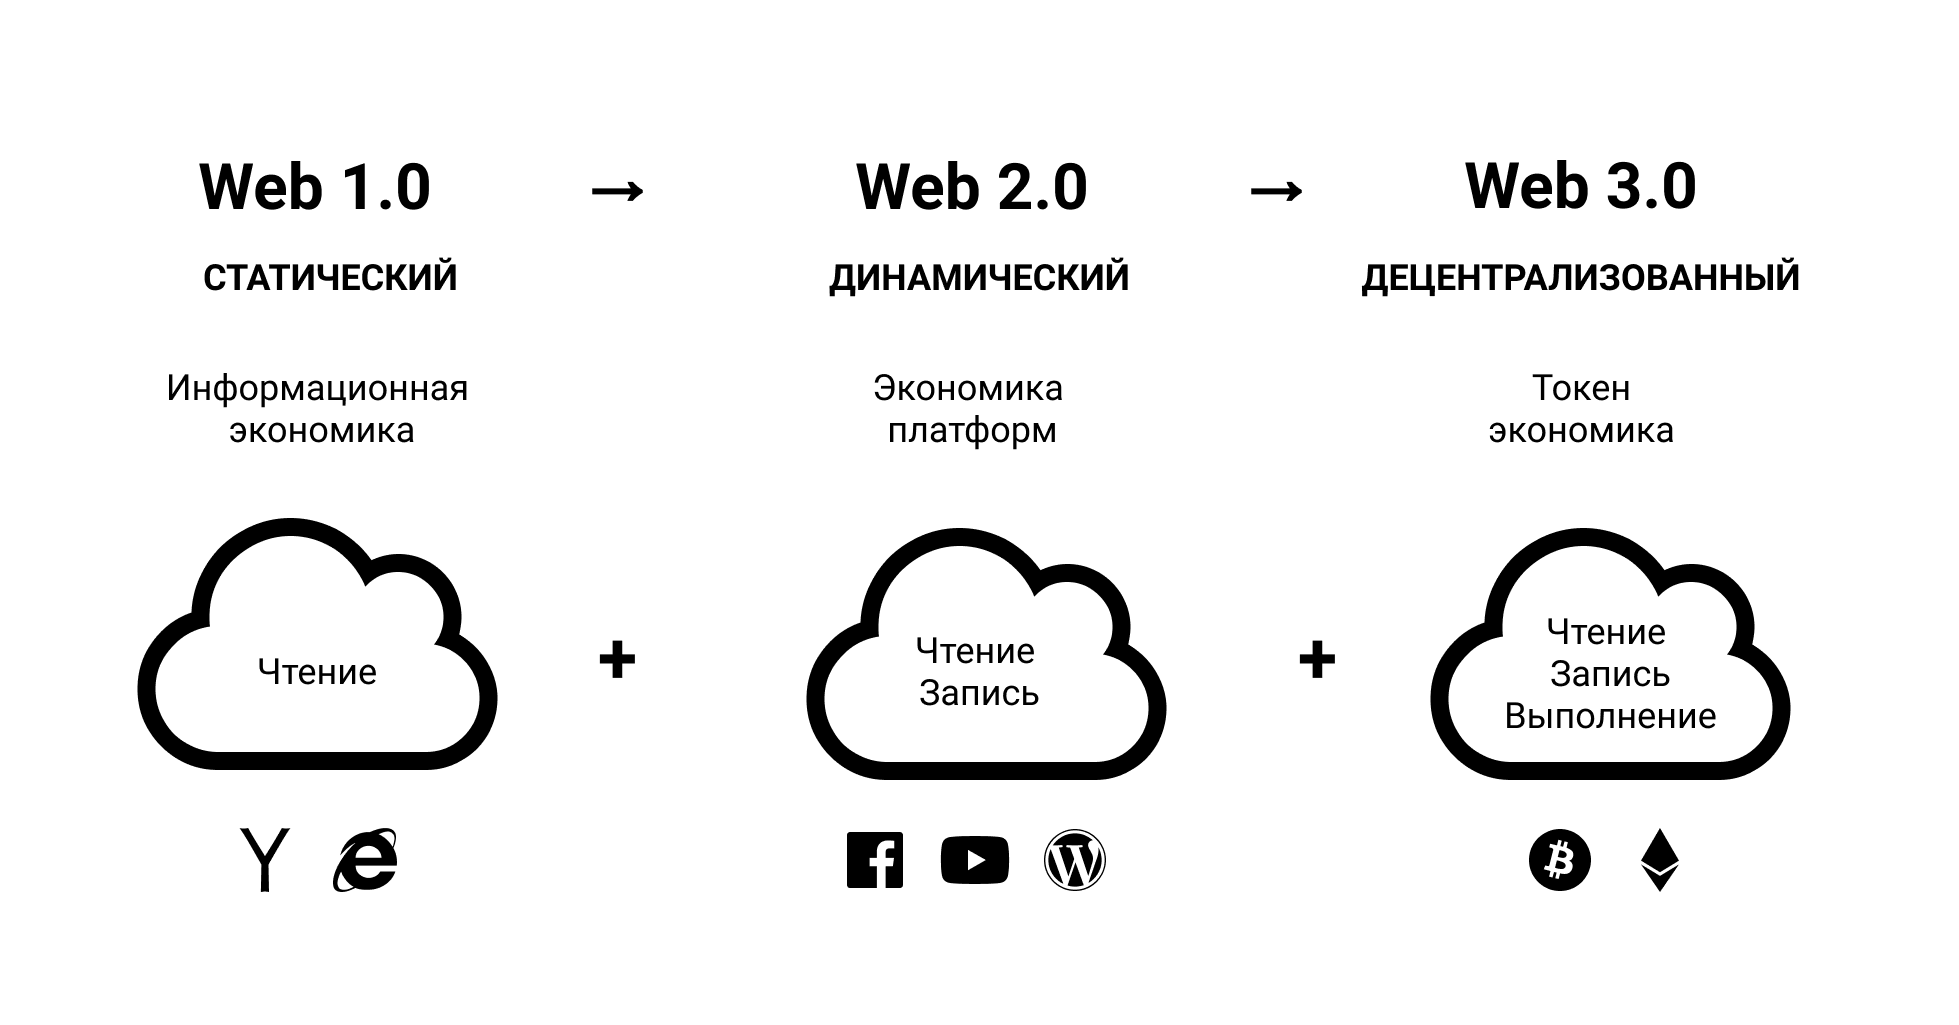 Web 3.0 или куда идёт Интернет